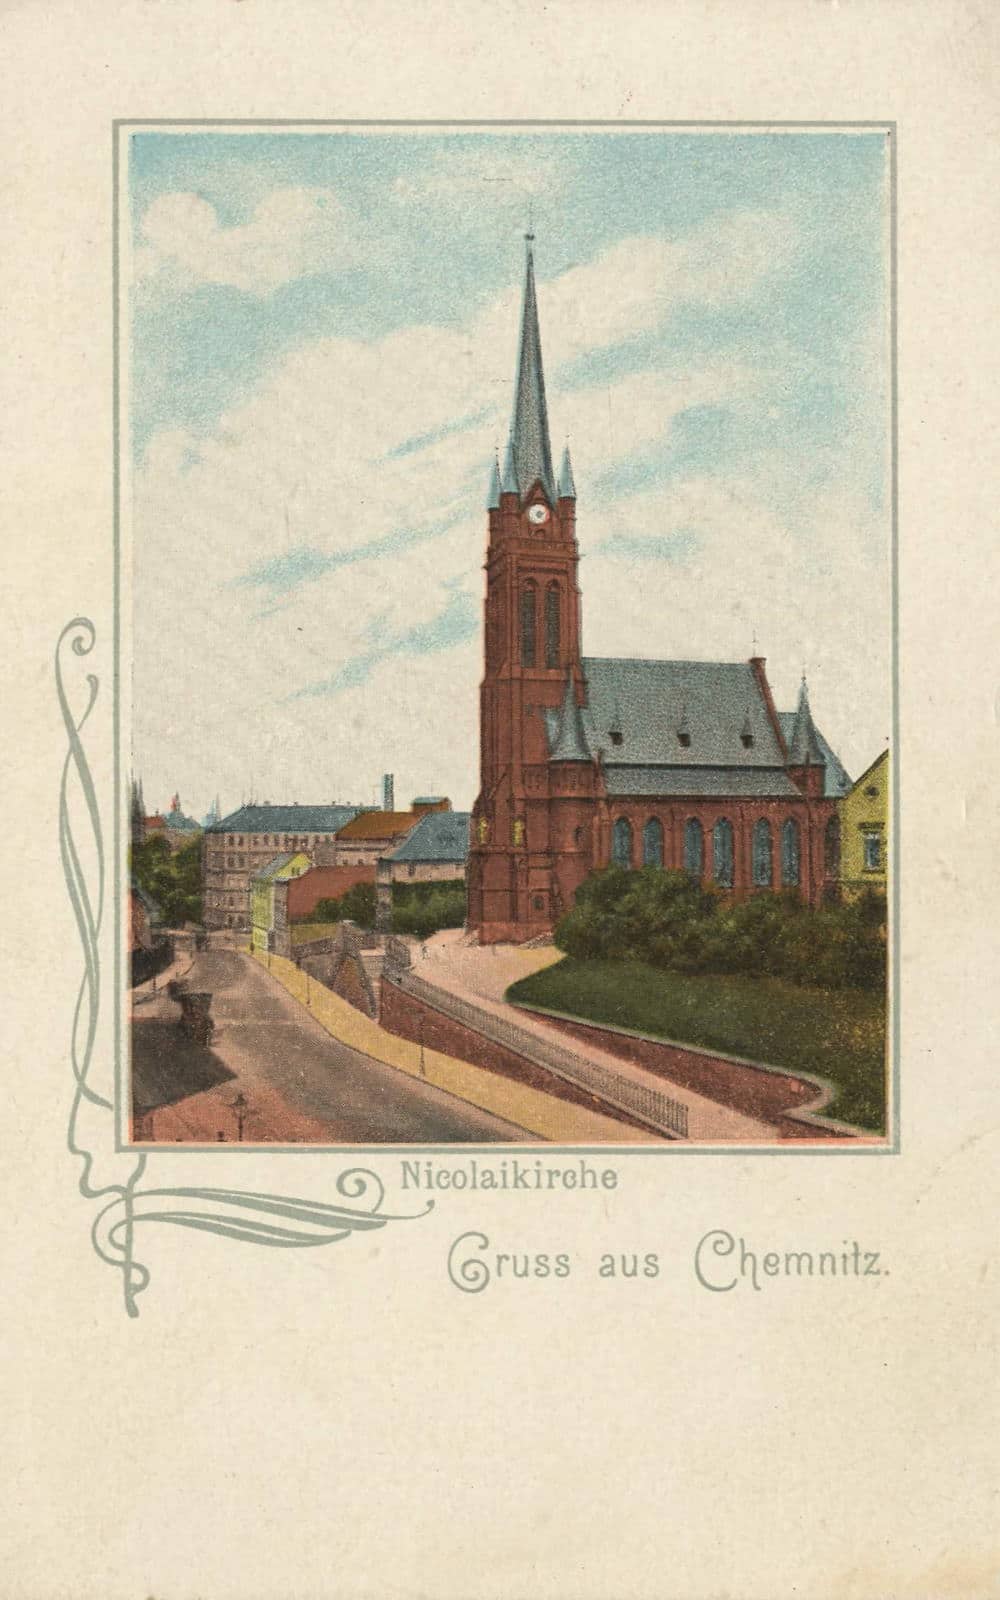 Die Kirche um 1900 (Ansichtskarte um 1900, gemeinfrei). Quelle: https://commons.wikimedia.org/wiki/File:Chemnitz,_Sachsen_-_Nikolaikirche_(Zeno_Ansichtskarten).jpg